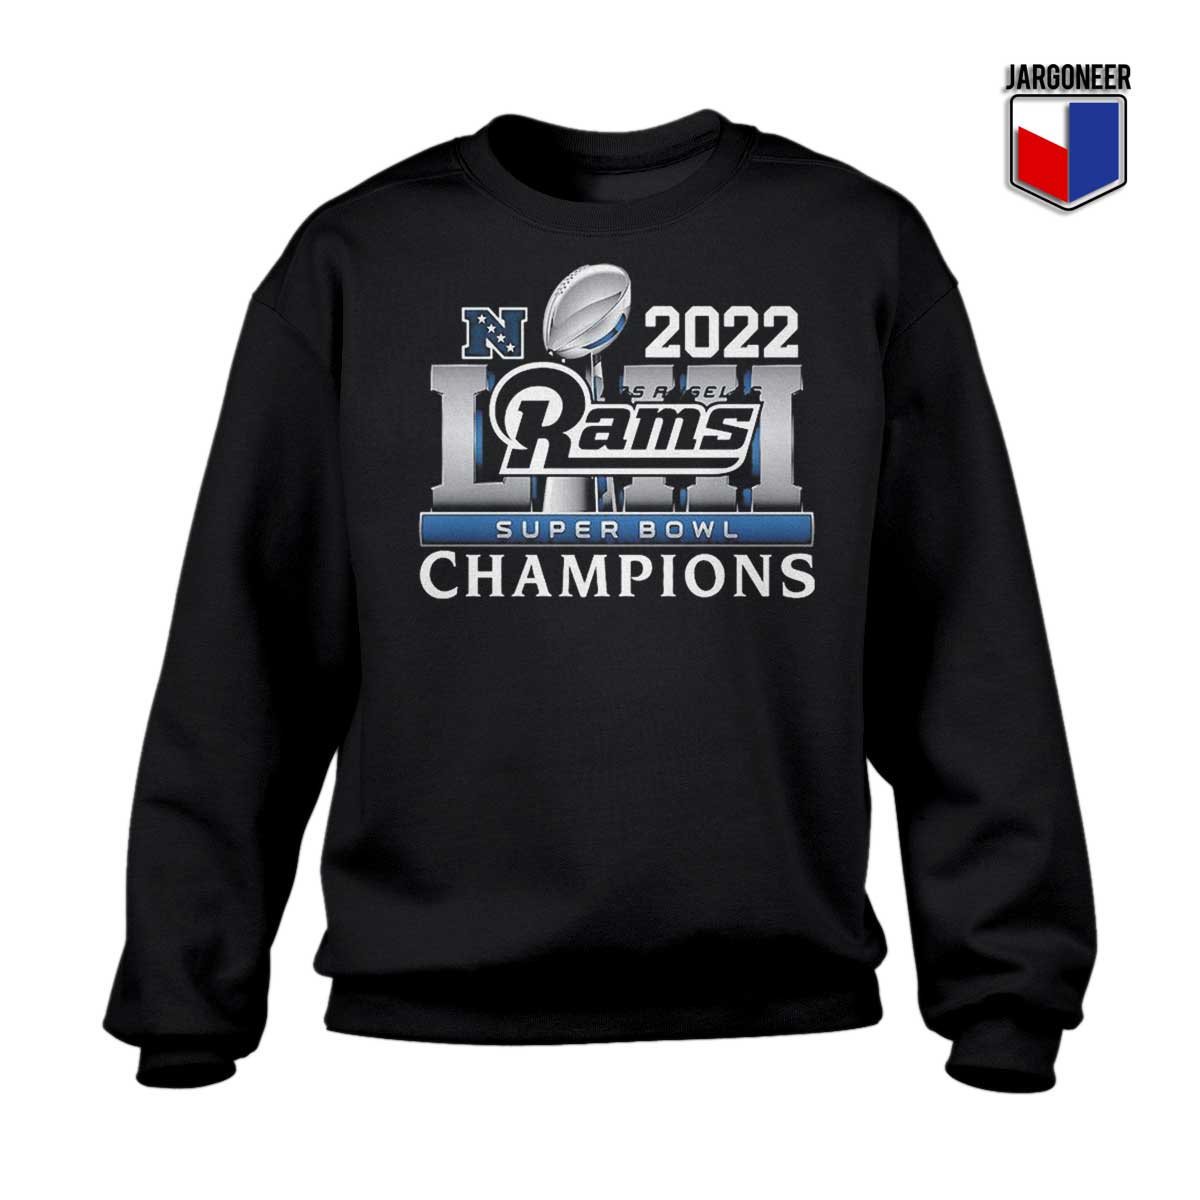 Los Angeles Rams Super Bowl Champions 2022 Sweatshirt - Shop Unique Graphic Cool Shirt Designs